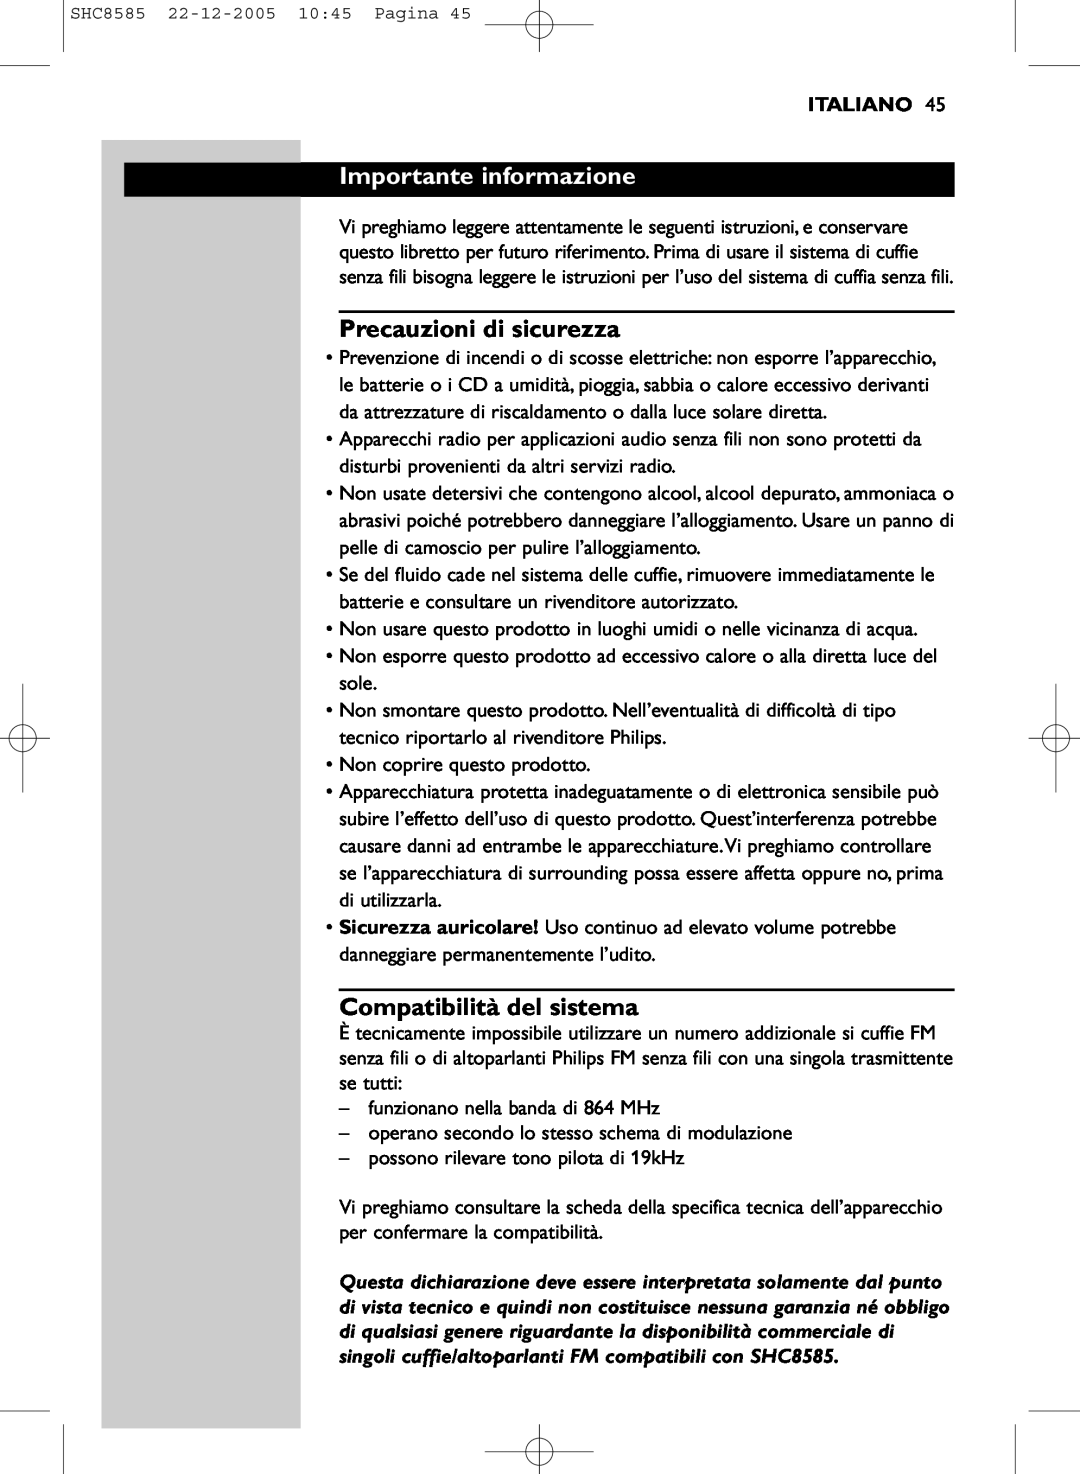 Philips SHC8585/05 manual Importante informazione, Precauzioni di sicurezza, Compatibilità del sistema, Italiano 